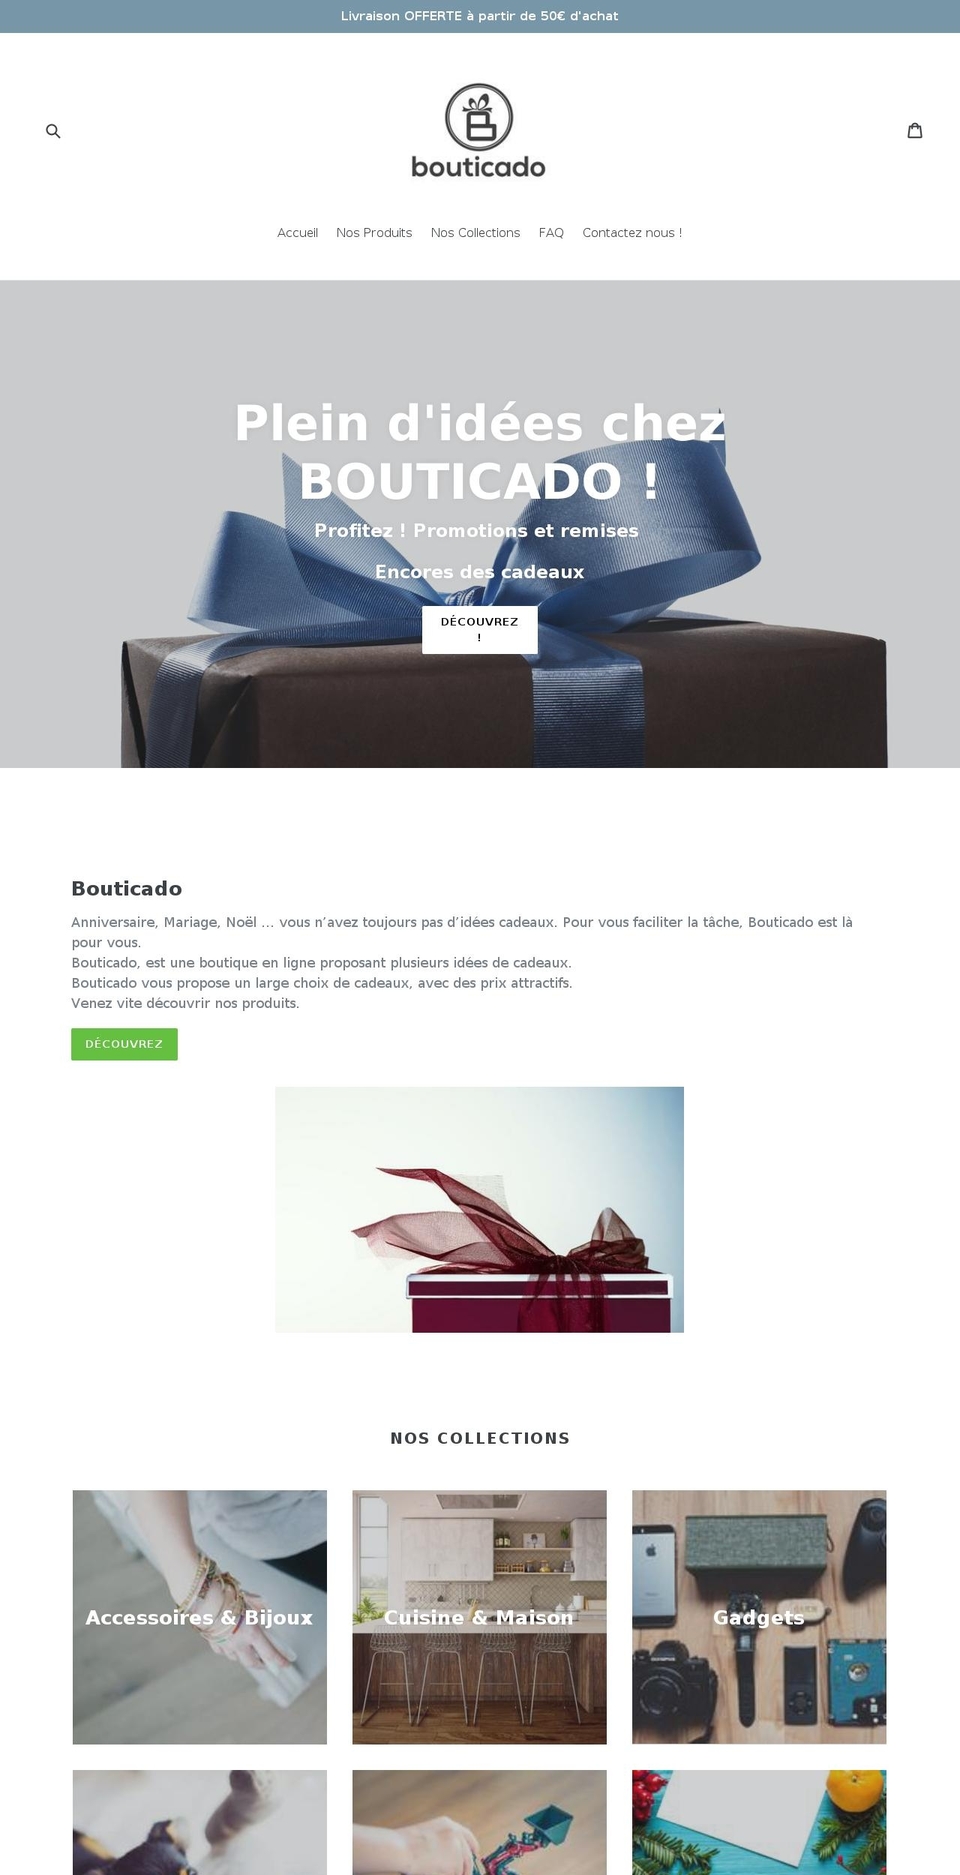 bouticado.com shopify website screenshot